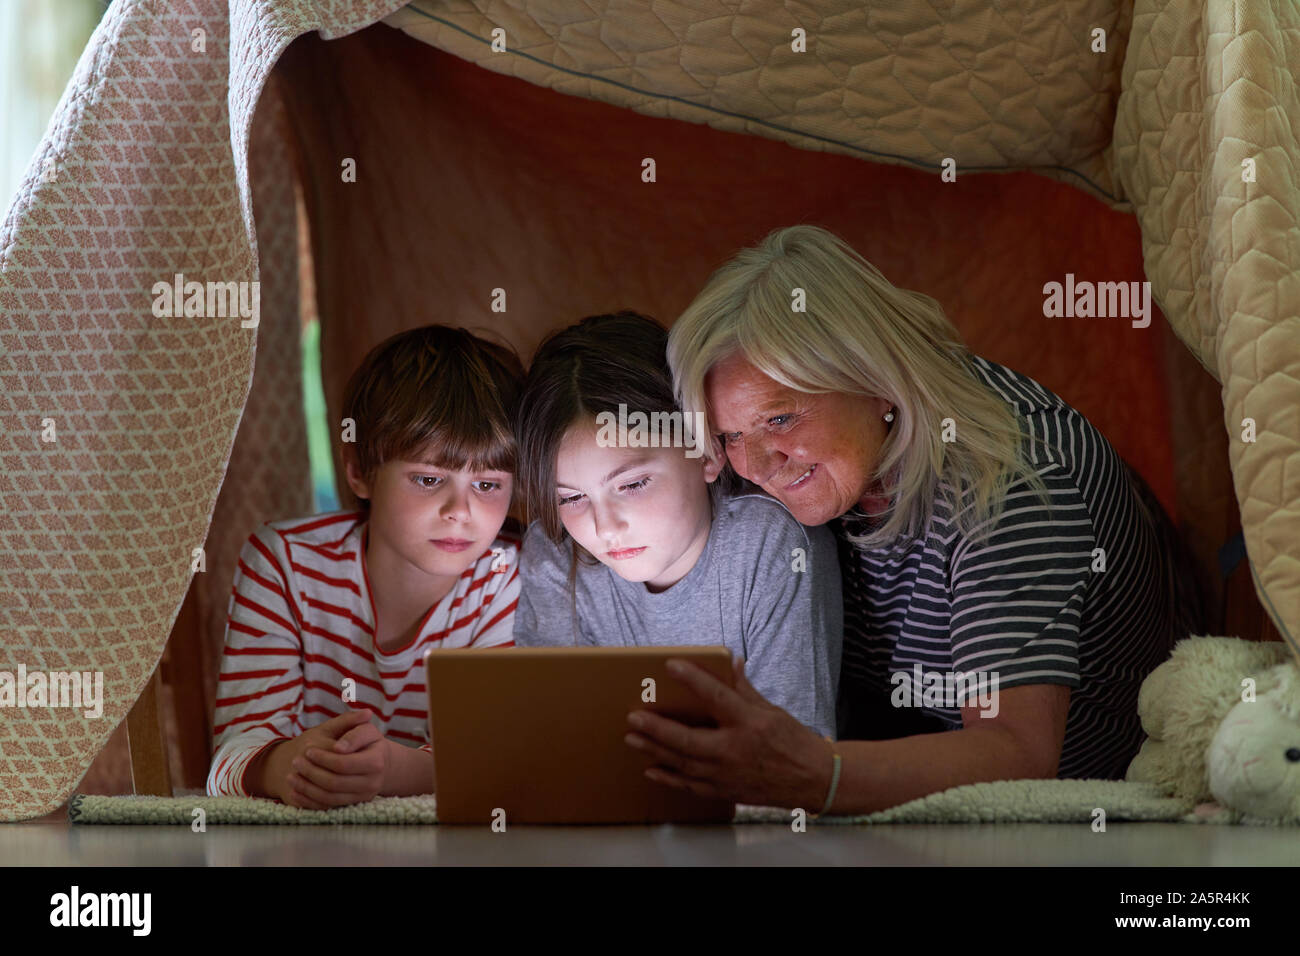 Kinder und Oma mit Tablet Computer beim Surfen im Internet unter Decke wie ein Zelt Stockfoto